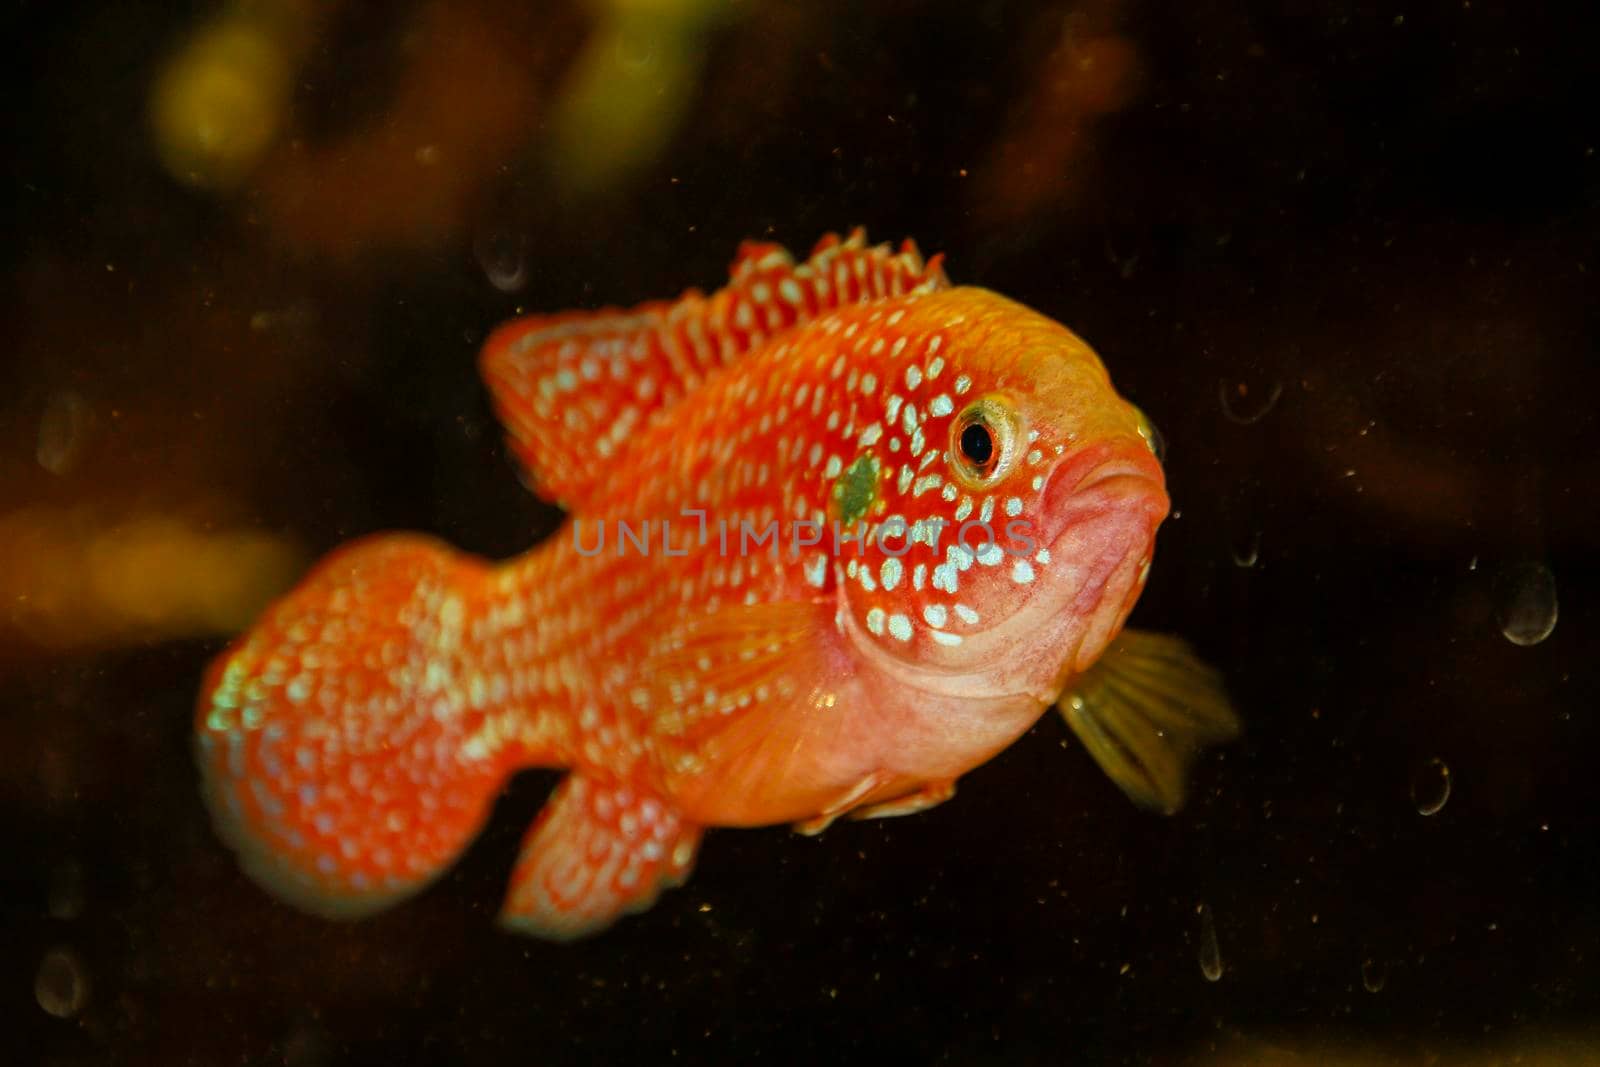 Hemichromis bimaculatus African jewelfish in aquarium by tinofotografie